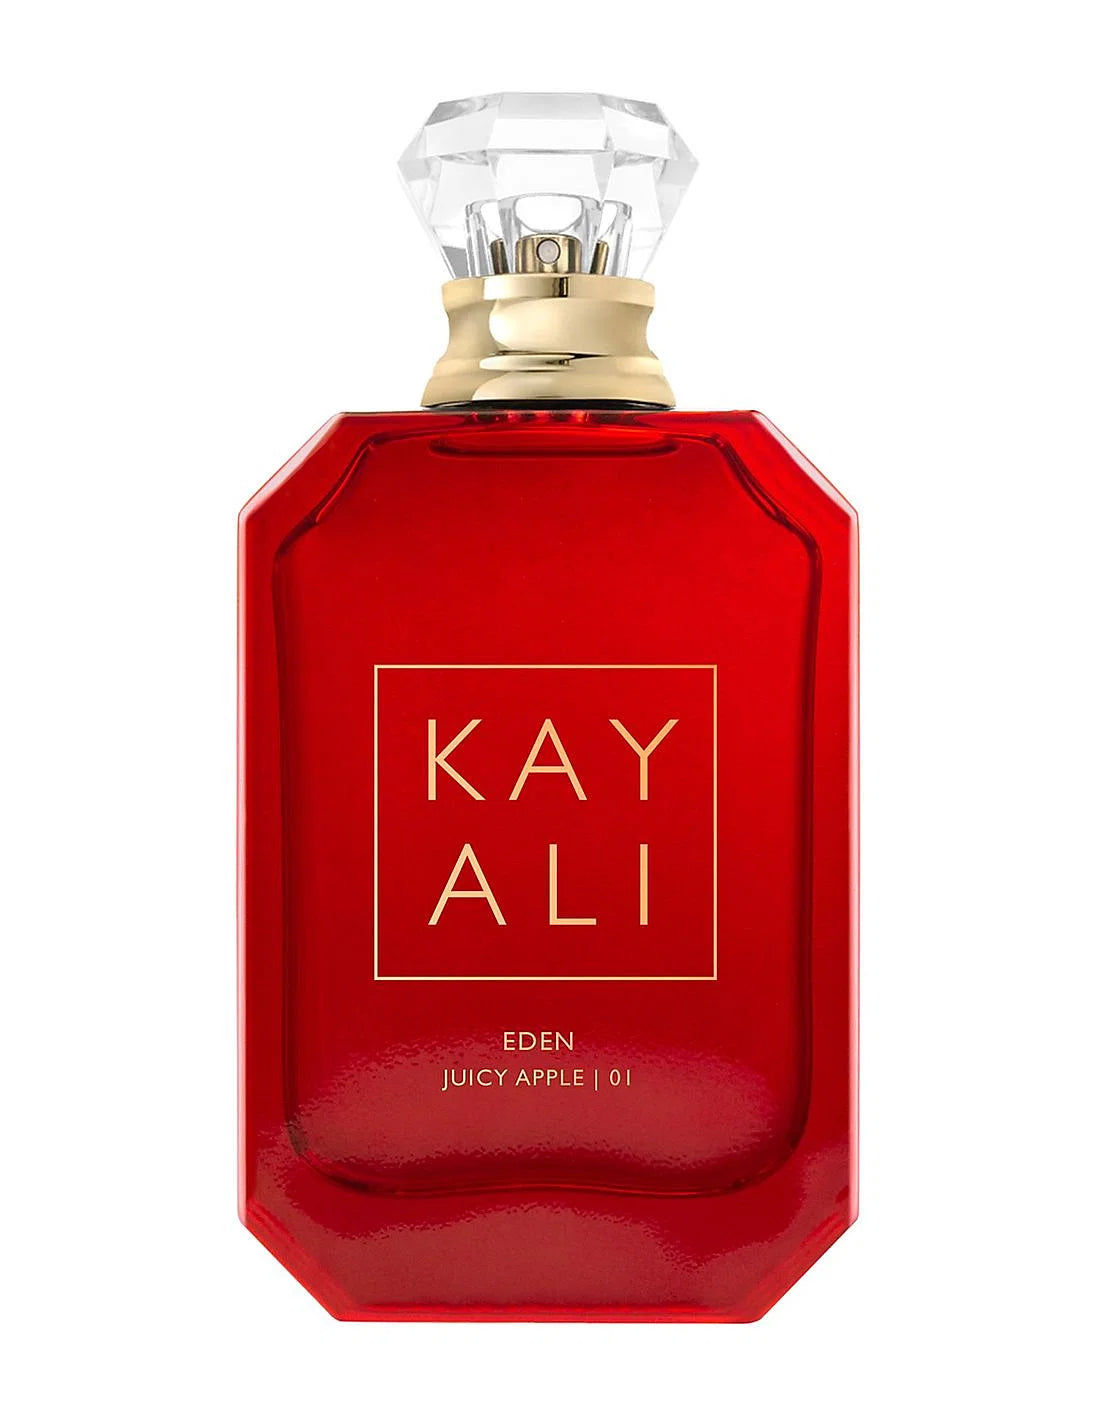 KAYALI Eden Juicy Apple 01 Eau De Parfum Decant/Samples